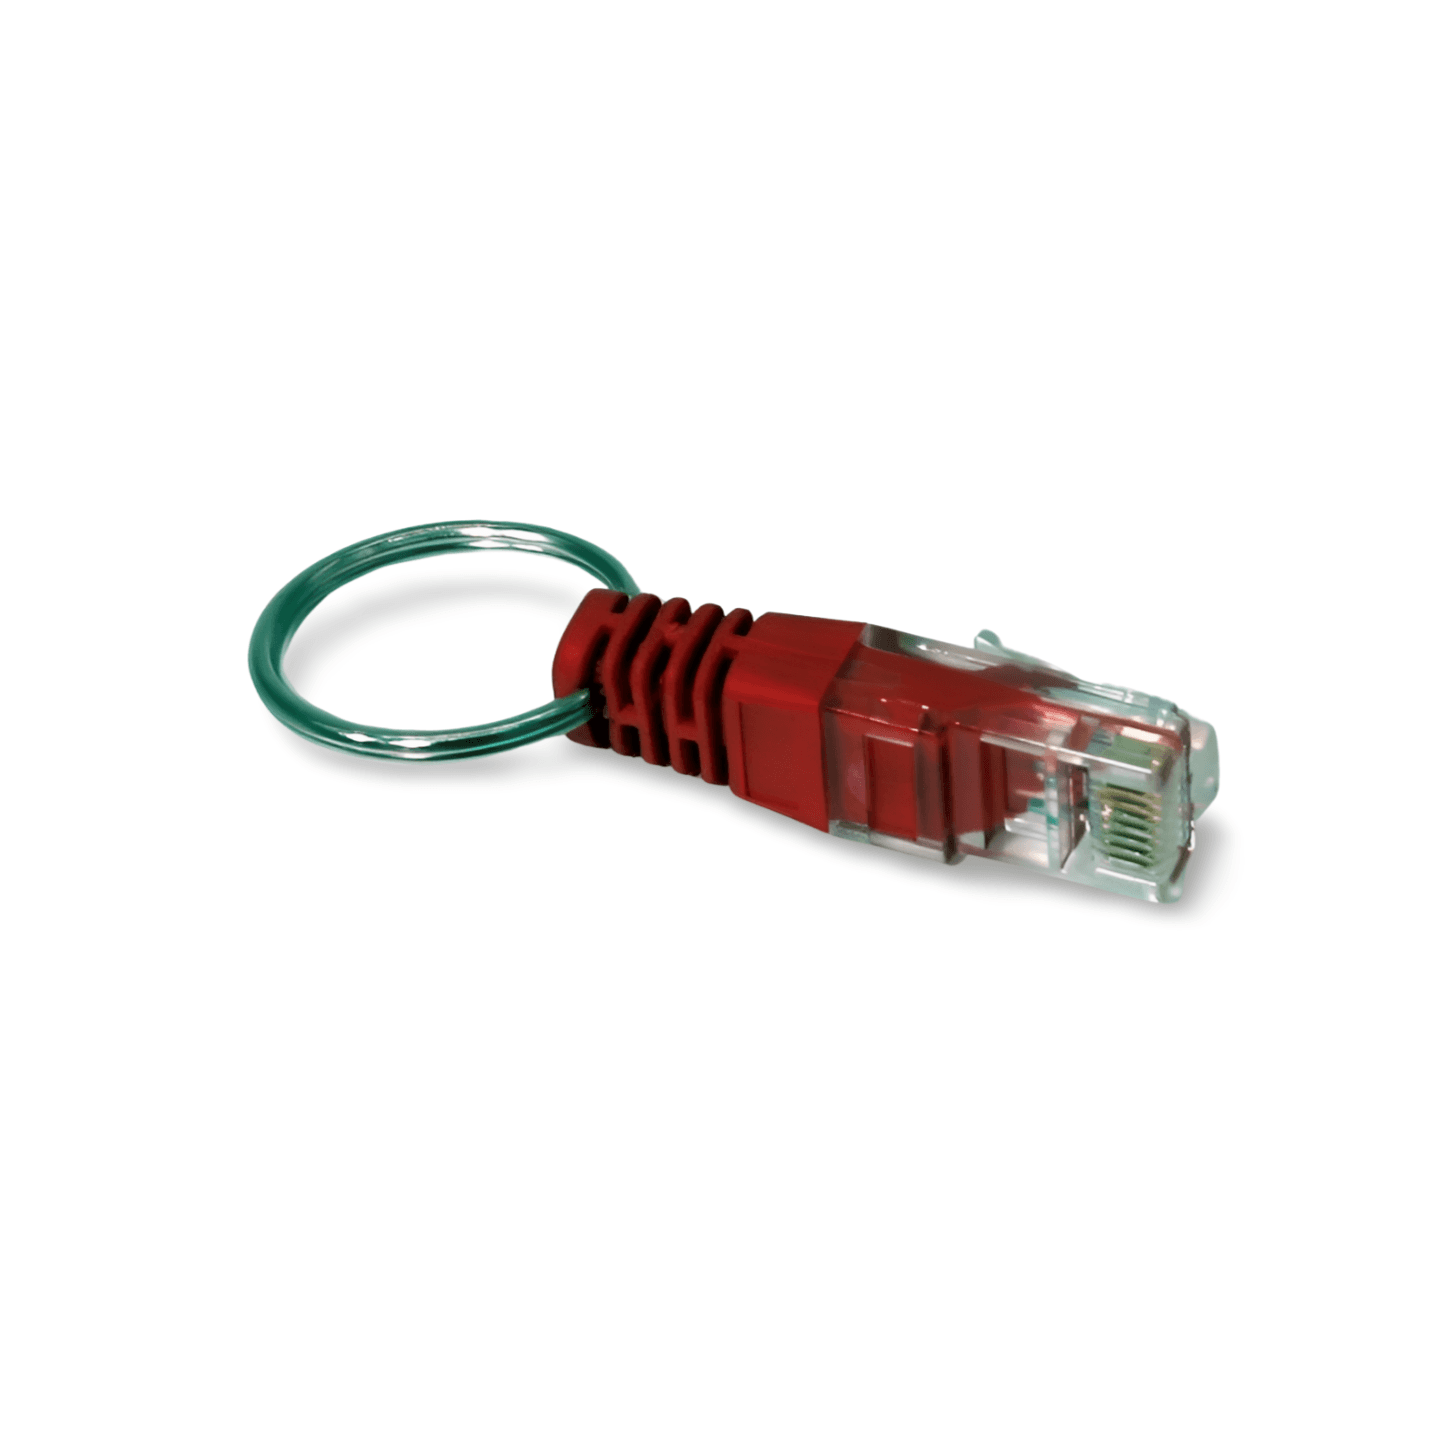 1in Loopback Adapter Tester Plug RJ45 Network GigaBit 100MB Ethernet red